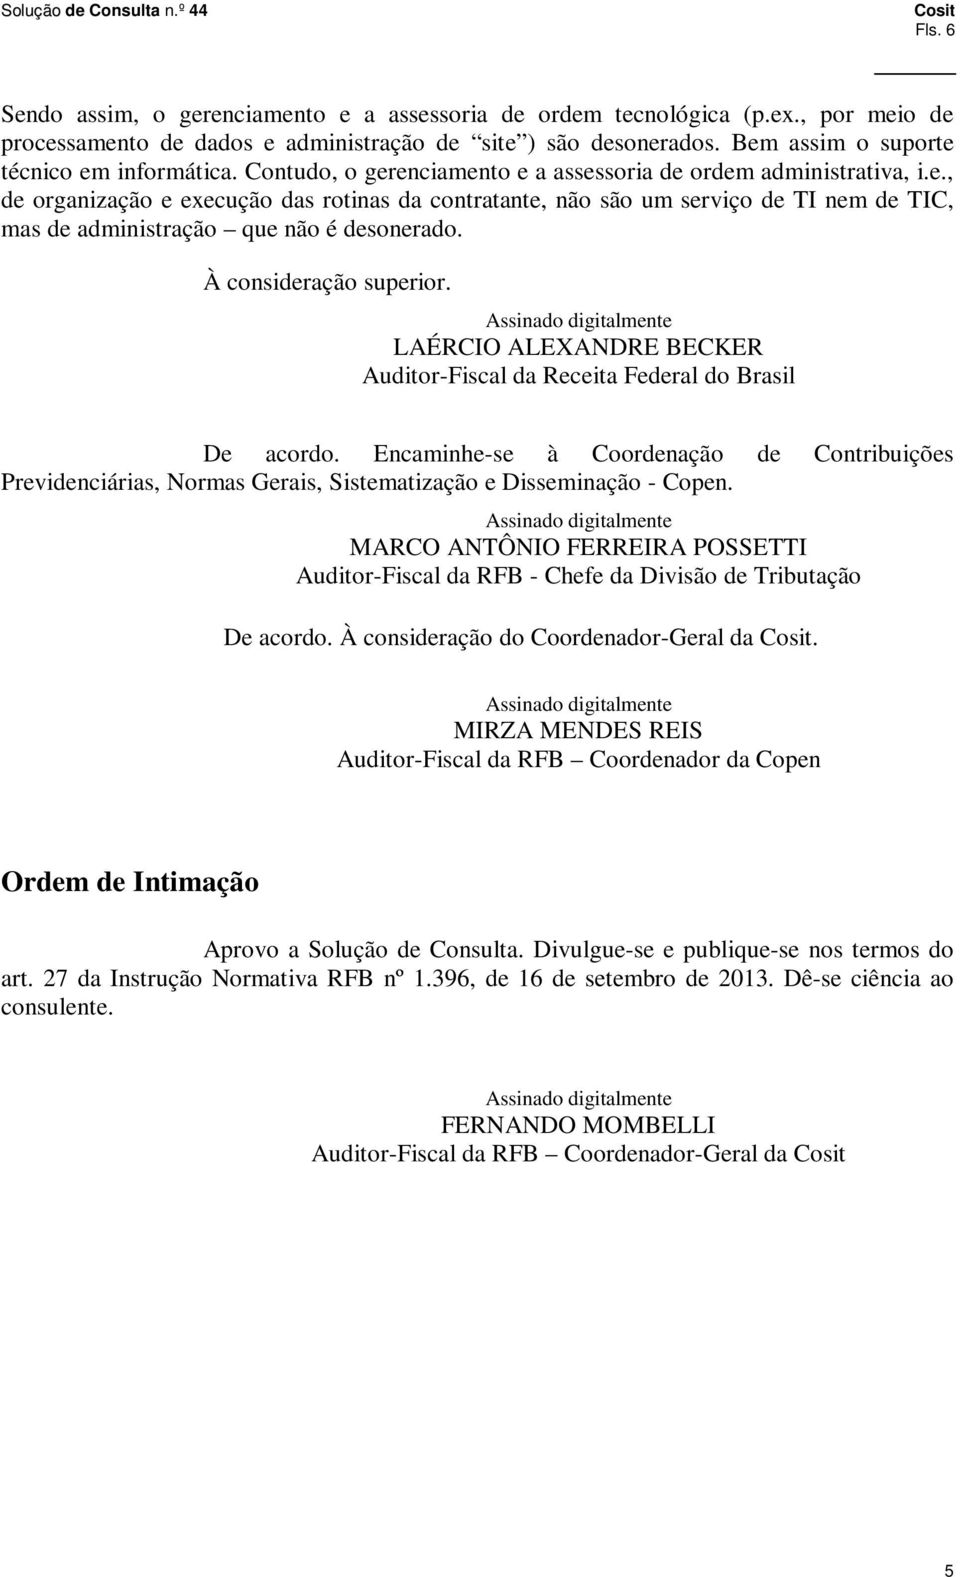 À consideração superior. LAÉRCIO ALEXANDRE BECKER Auditor-Fiscal da Receita Federal do Brasil De acordo.